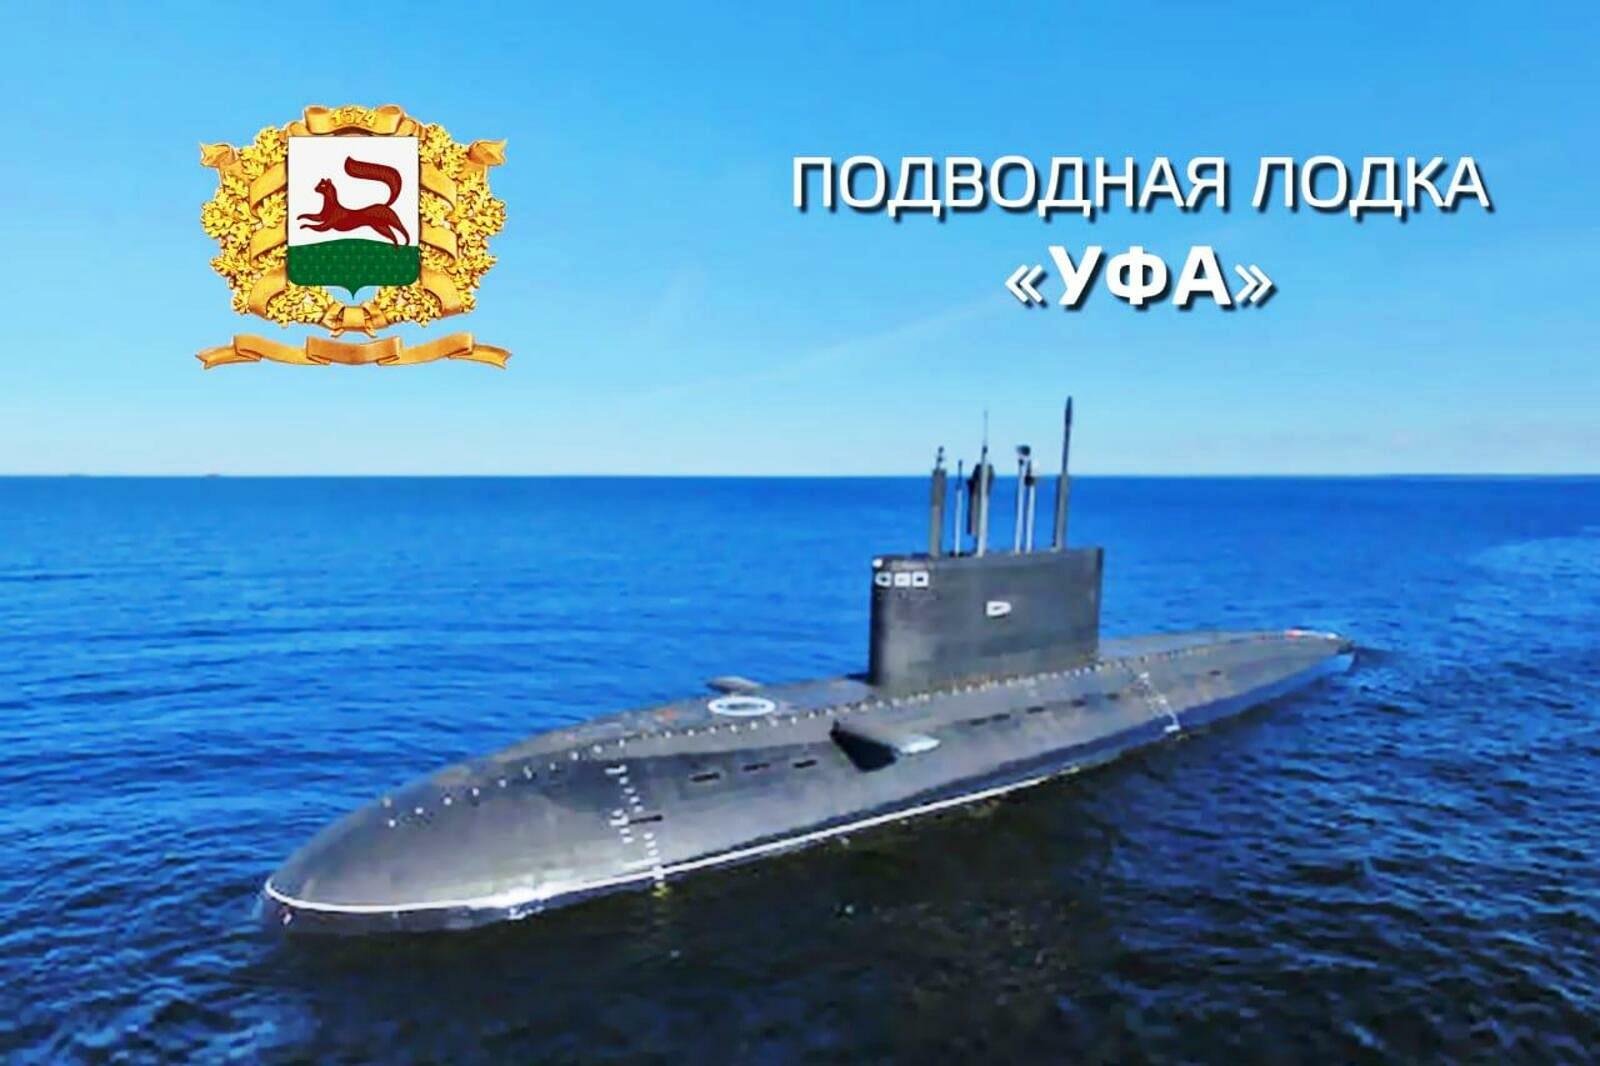 bashinform.ru Большая дизель-электрическая подводная лодка проекта 636.3 «Уфа» Тихоокеанского флота